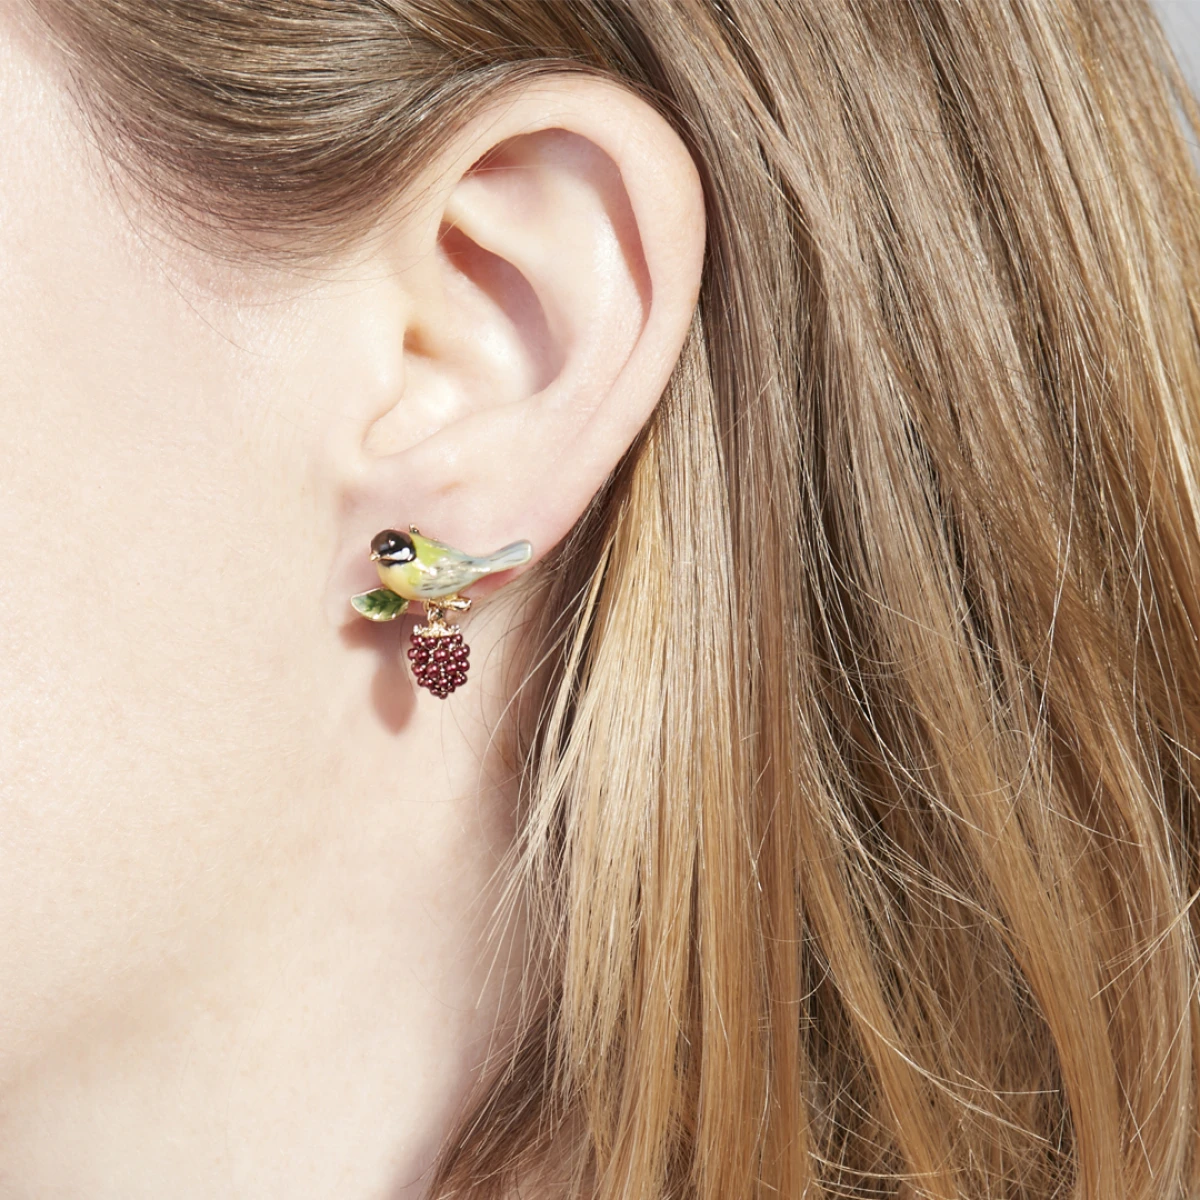 

Little 3D Birdie on Grape and Flower Earrings with Enamel Bird Ear Stud